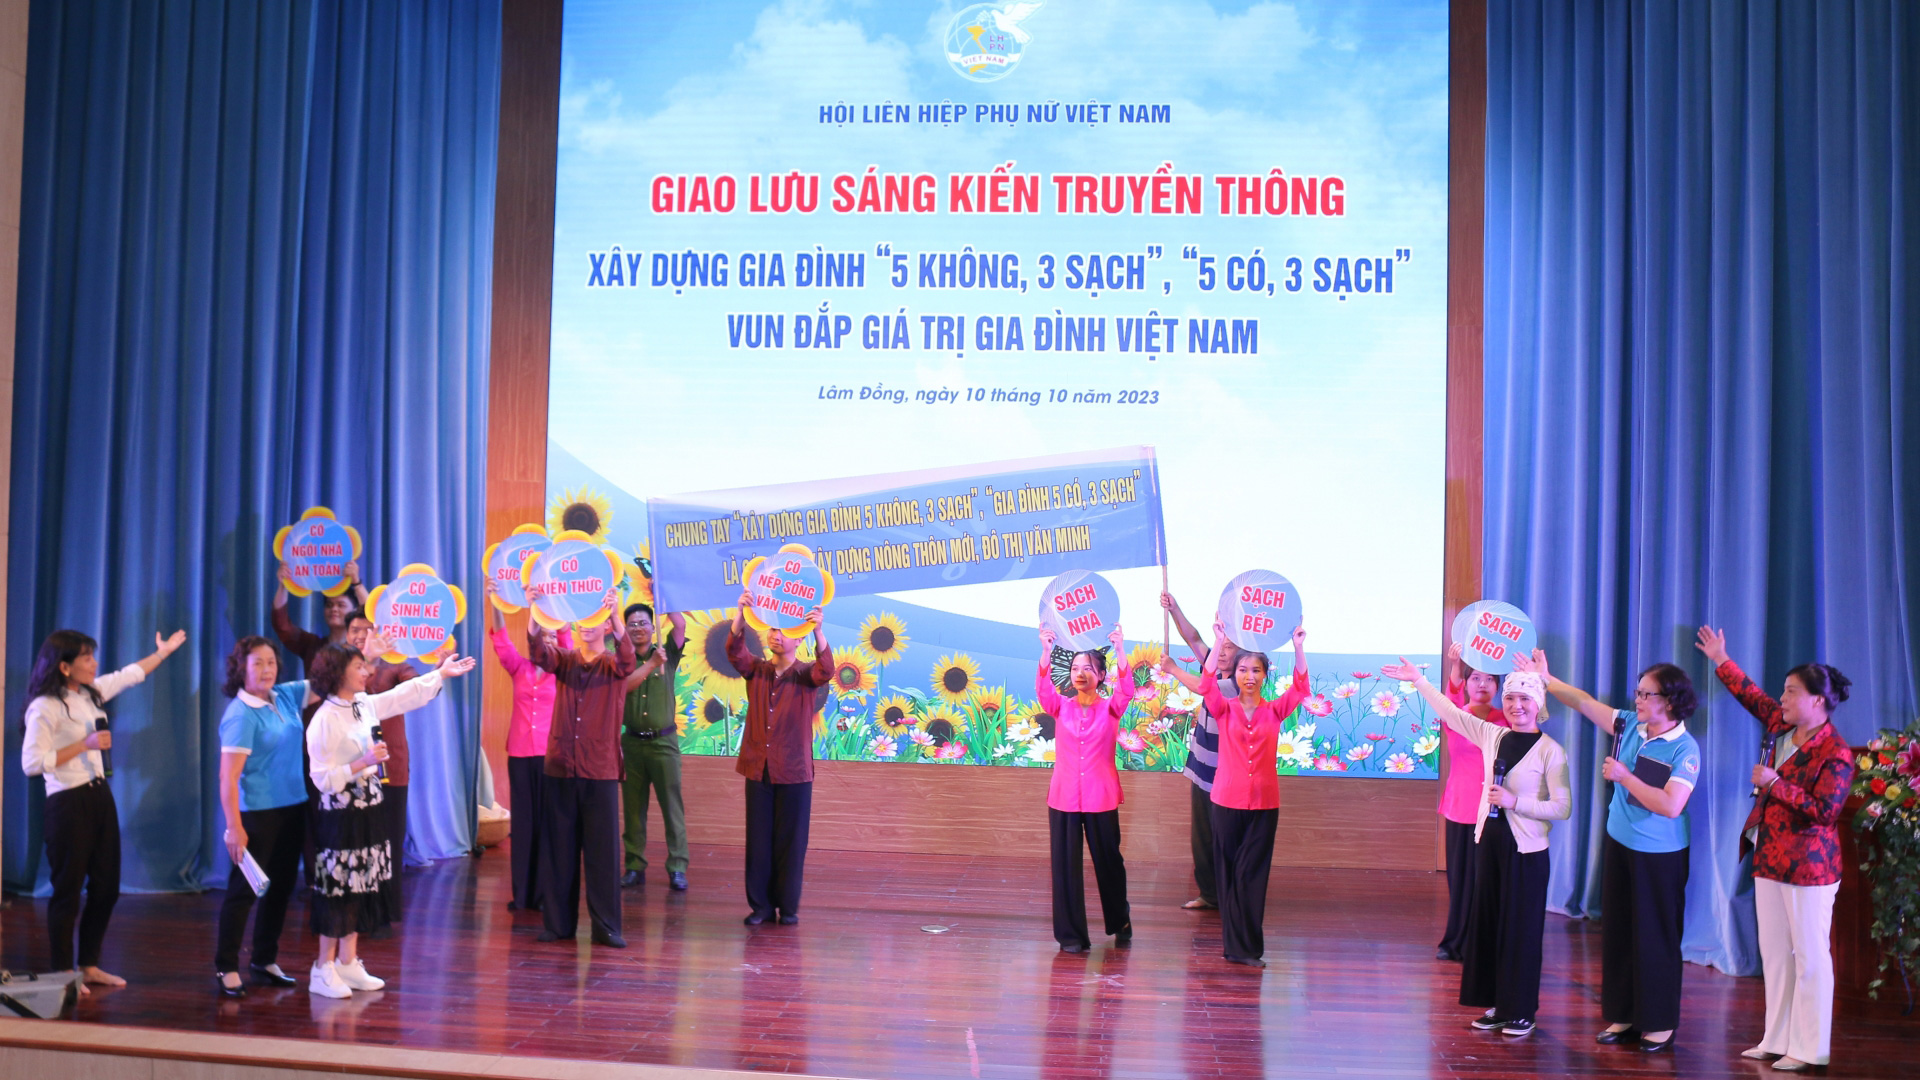 Các đội tuyên truyền viên đã thể hiện sáng kiến truyền thông về xây dựng gia đình hạnh phúc “5 không, 3 sạch”, “5 có, 3 sạch”, vun đắp giá trị gia đình Việt Nam, gắn với xây dựng nông thôn mới